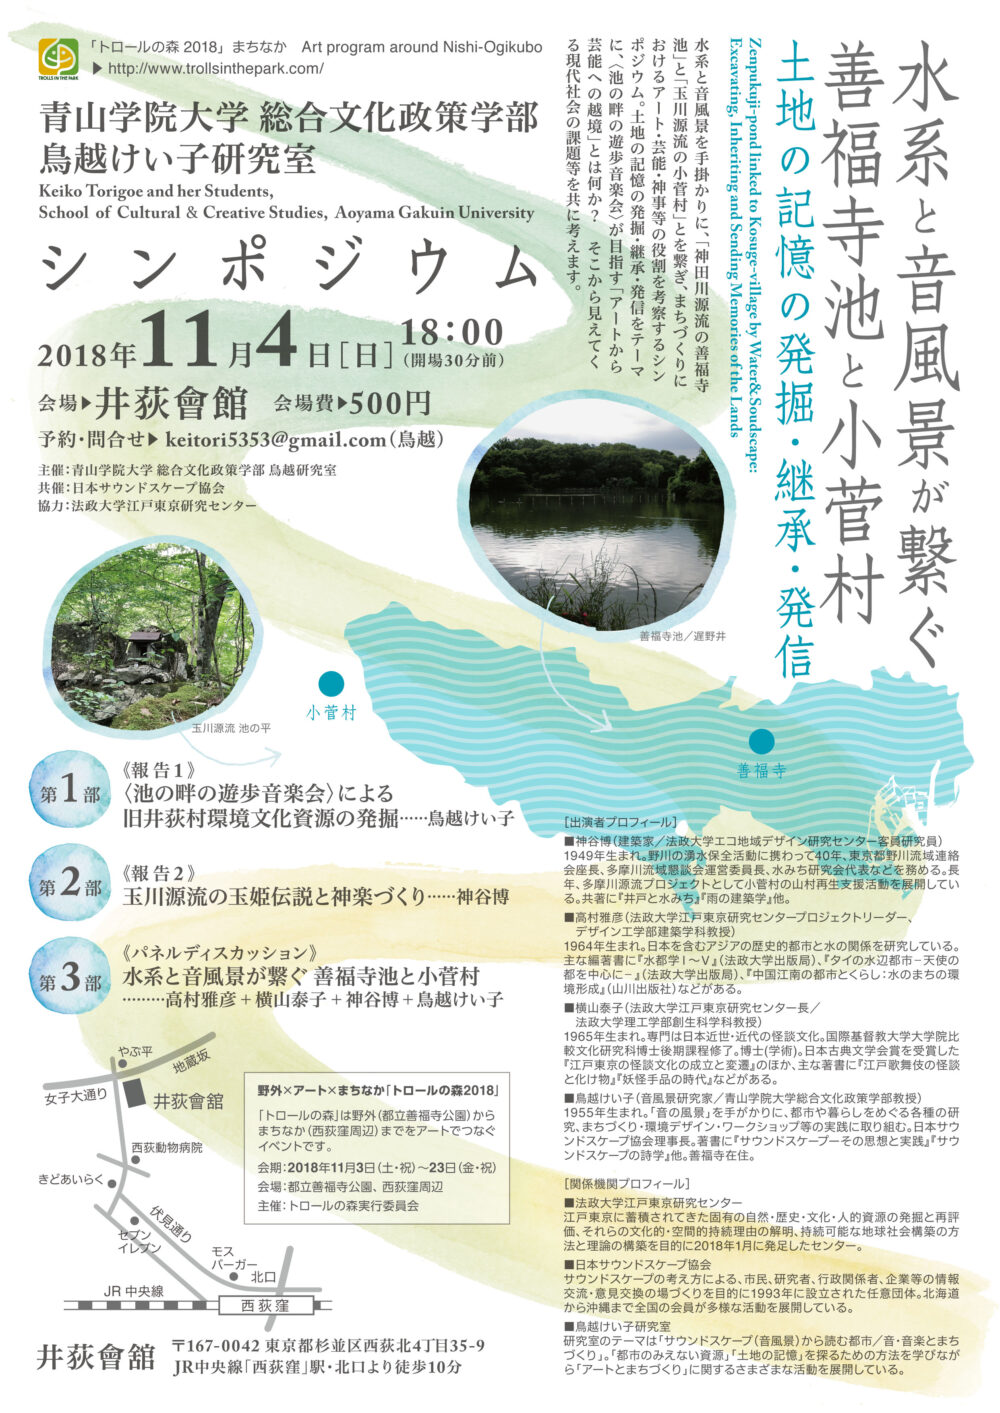 【関連イベントのお知らせです】シンポジウム「水系と音風景が繋ぐ 善福寺池と小菅村～土地の記憶を発掘・継承・発信～」を開催いたします（2018年11月4日）